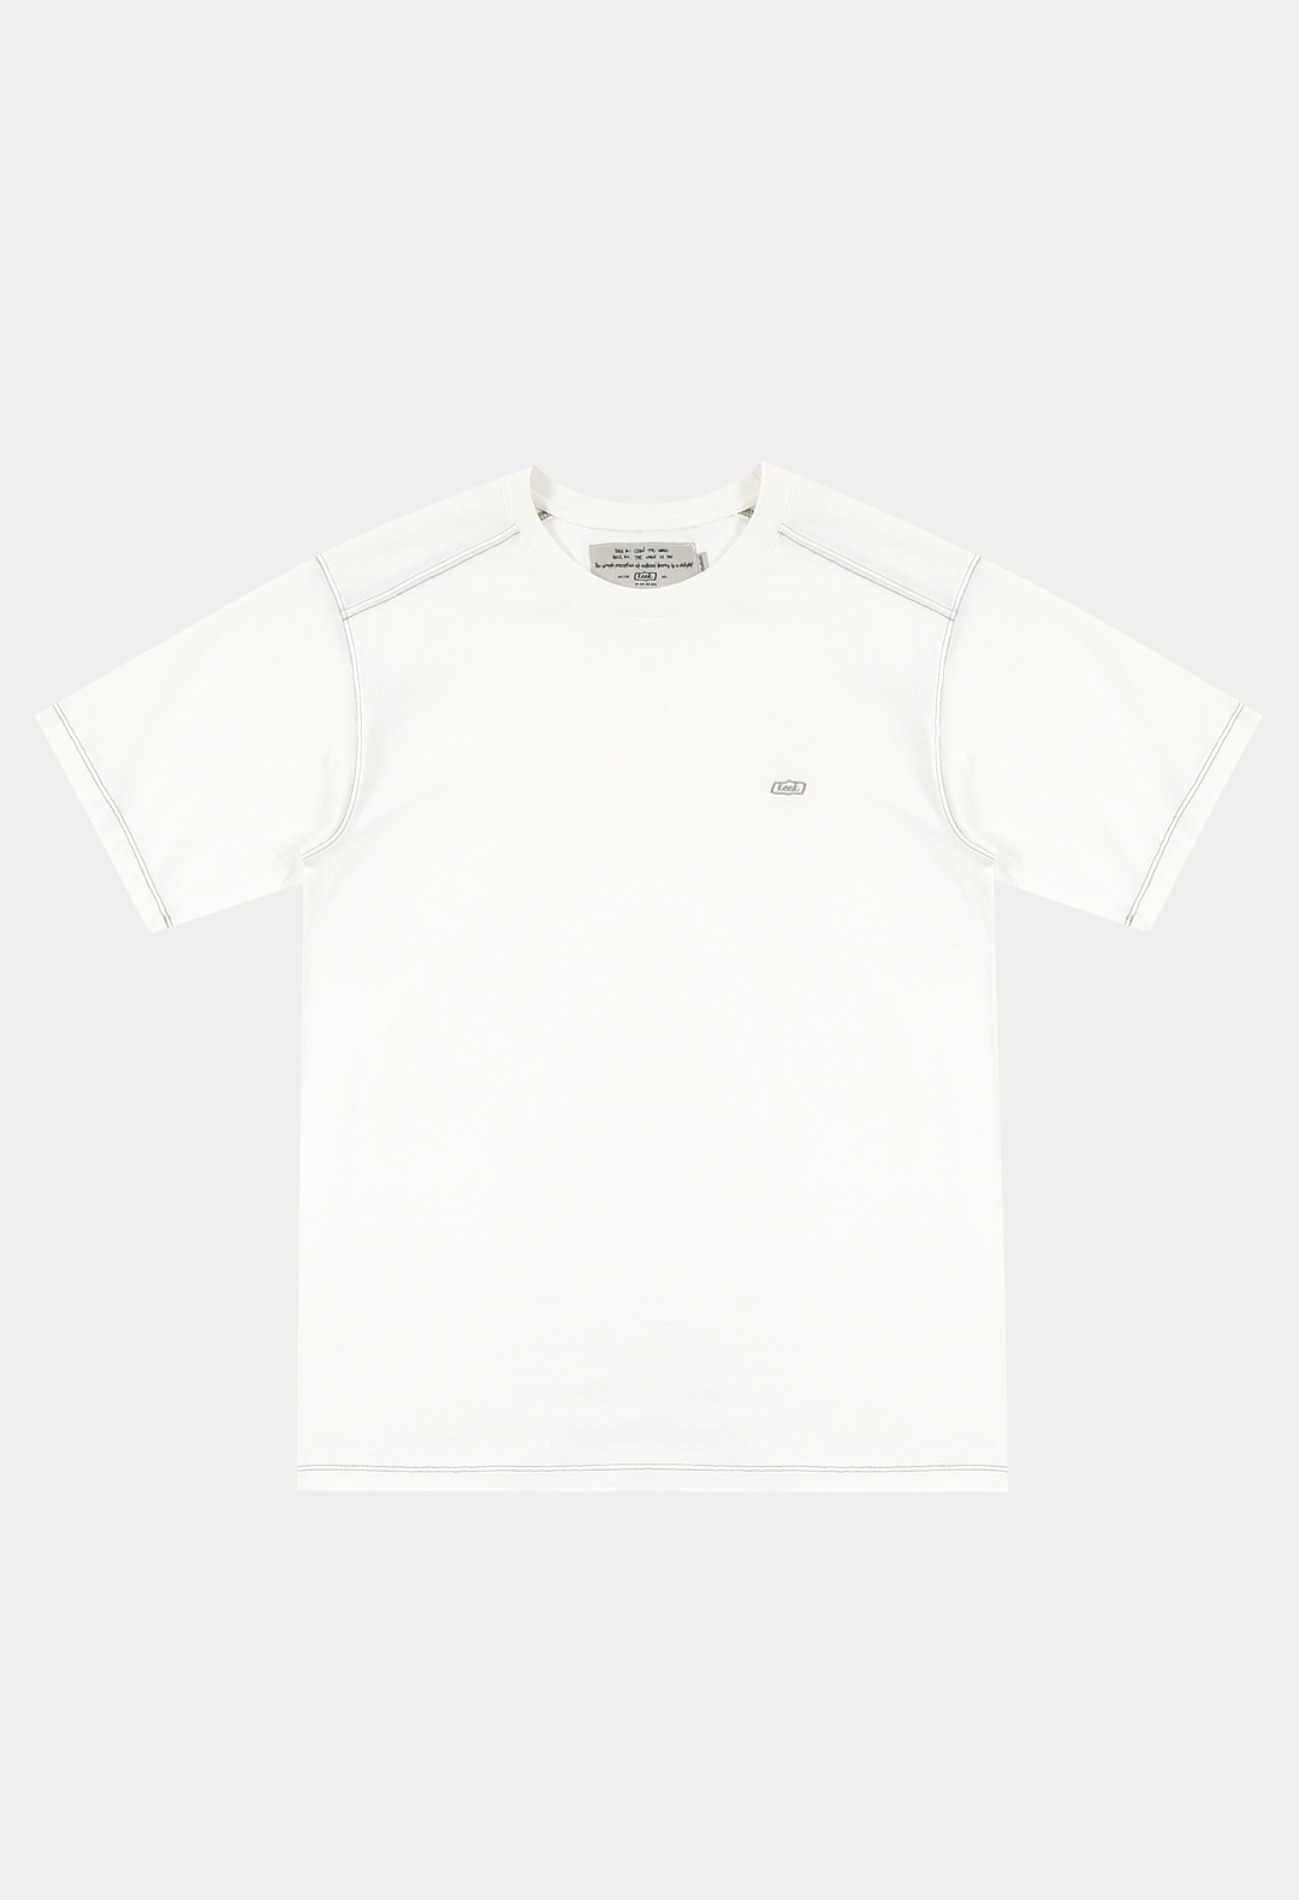 keek Stitch Logo T-shirts - White 스트릿패션 유니섹스브랜드 커플시밀러룩 남자쇼핑몰 여성의류쇼핑몰 후드티 힙색